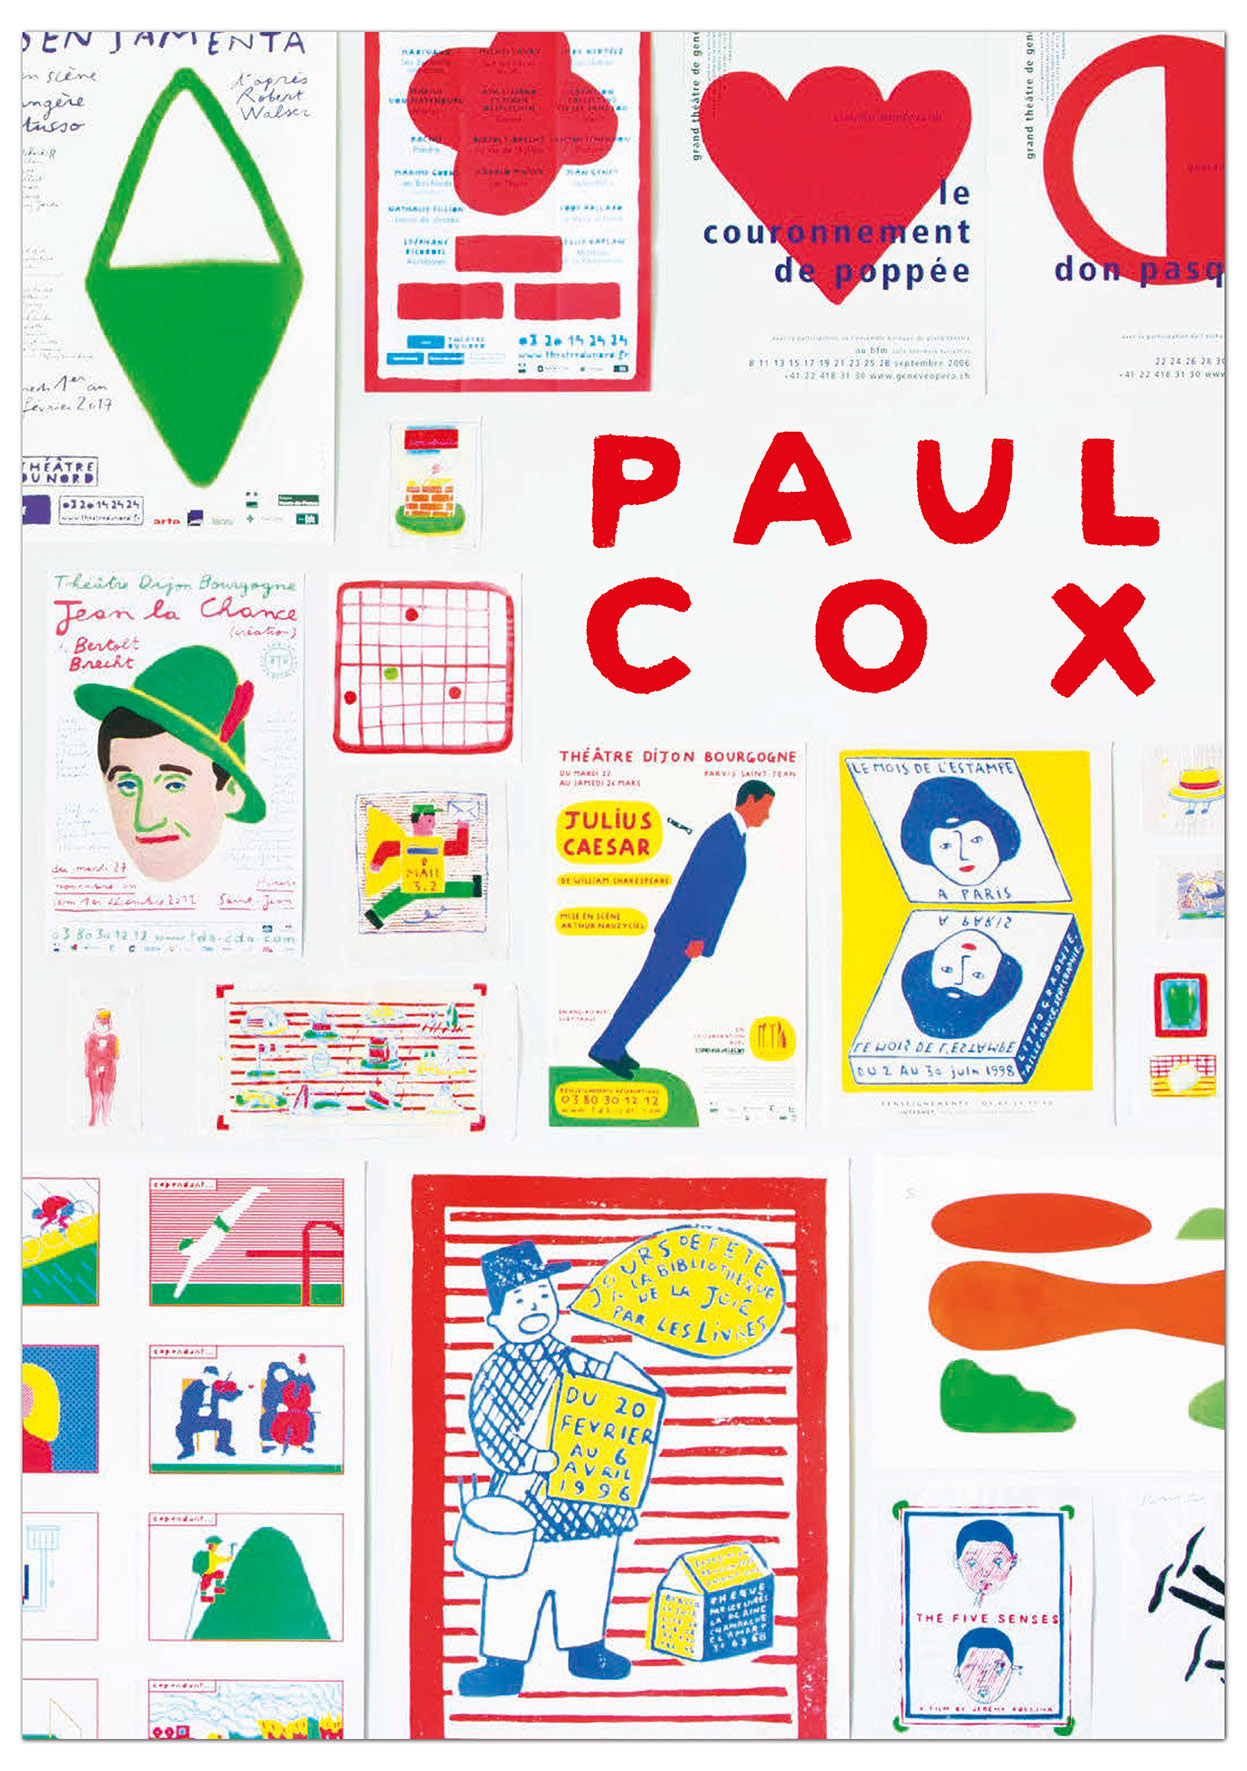 Paul Cox, éditions MeMo, 180 x 257 mm, monographie éponyme